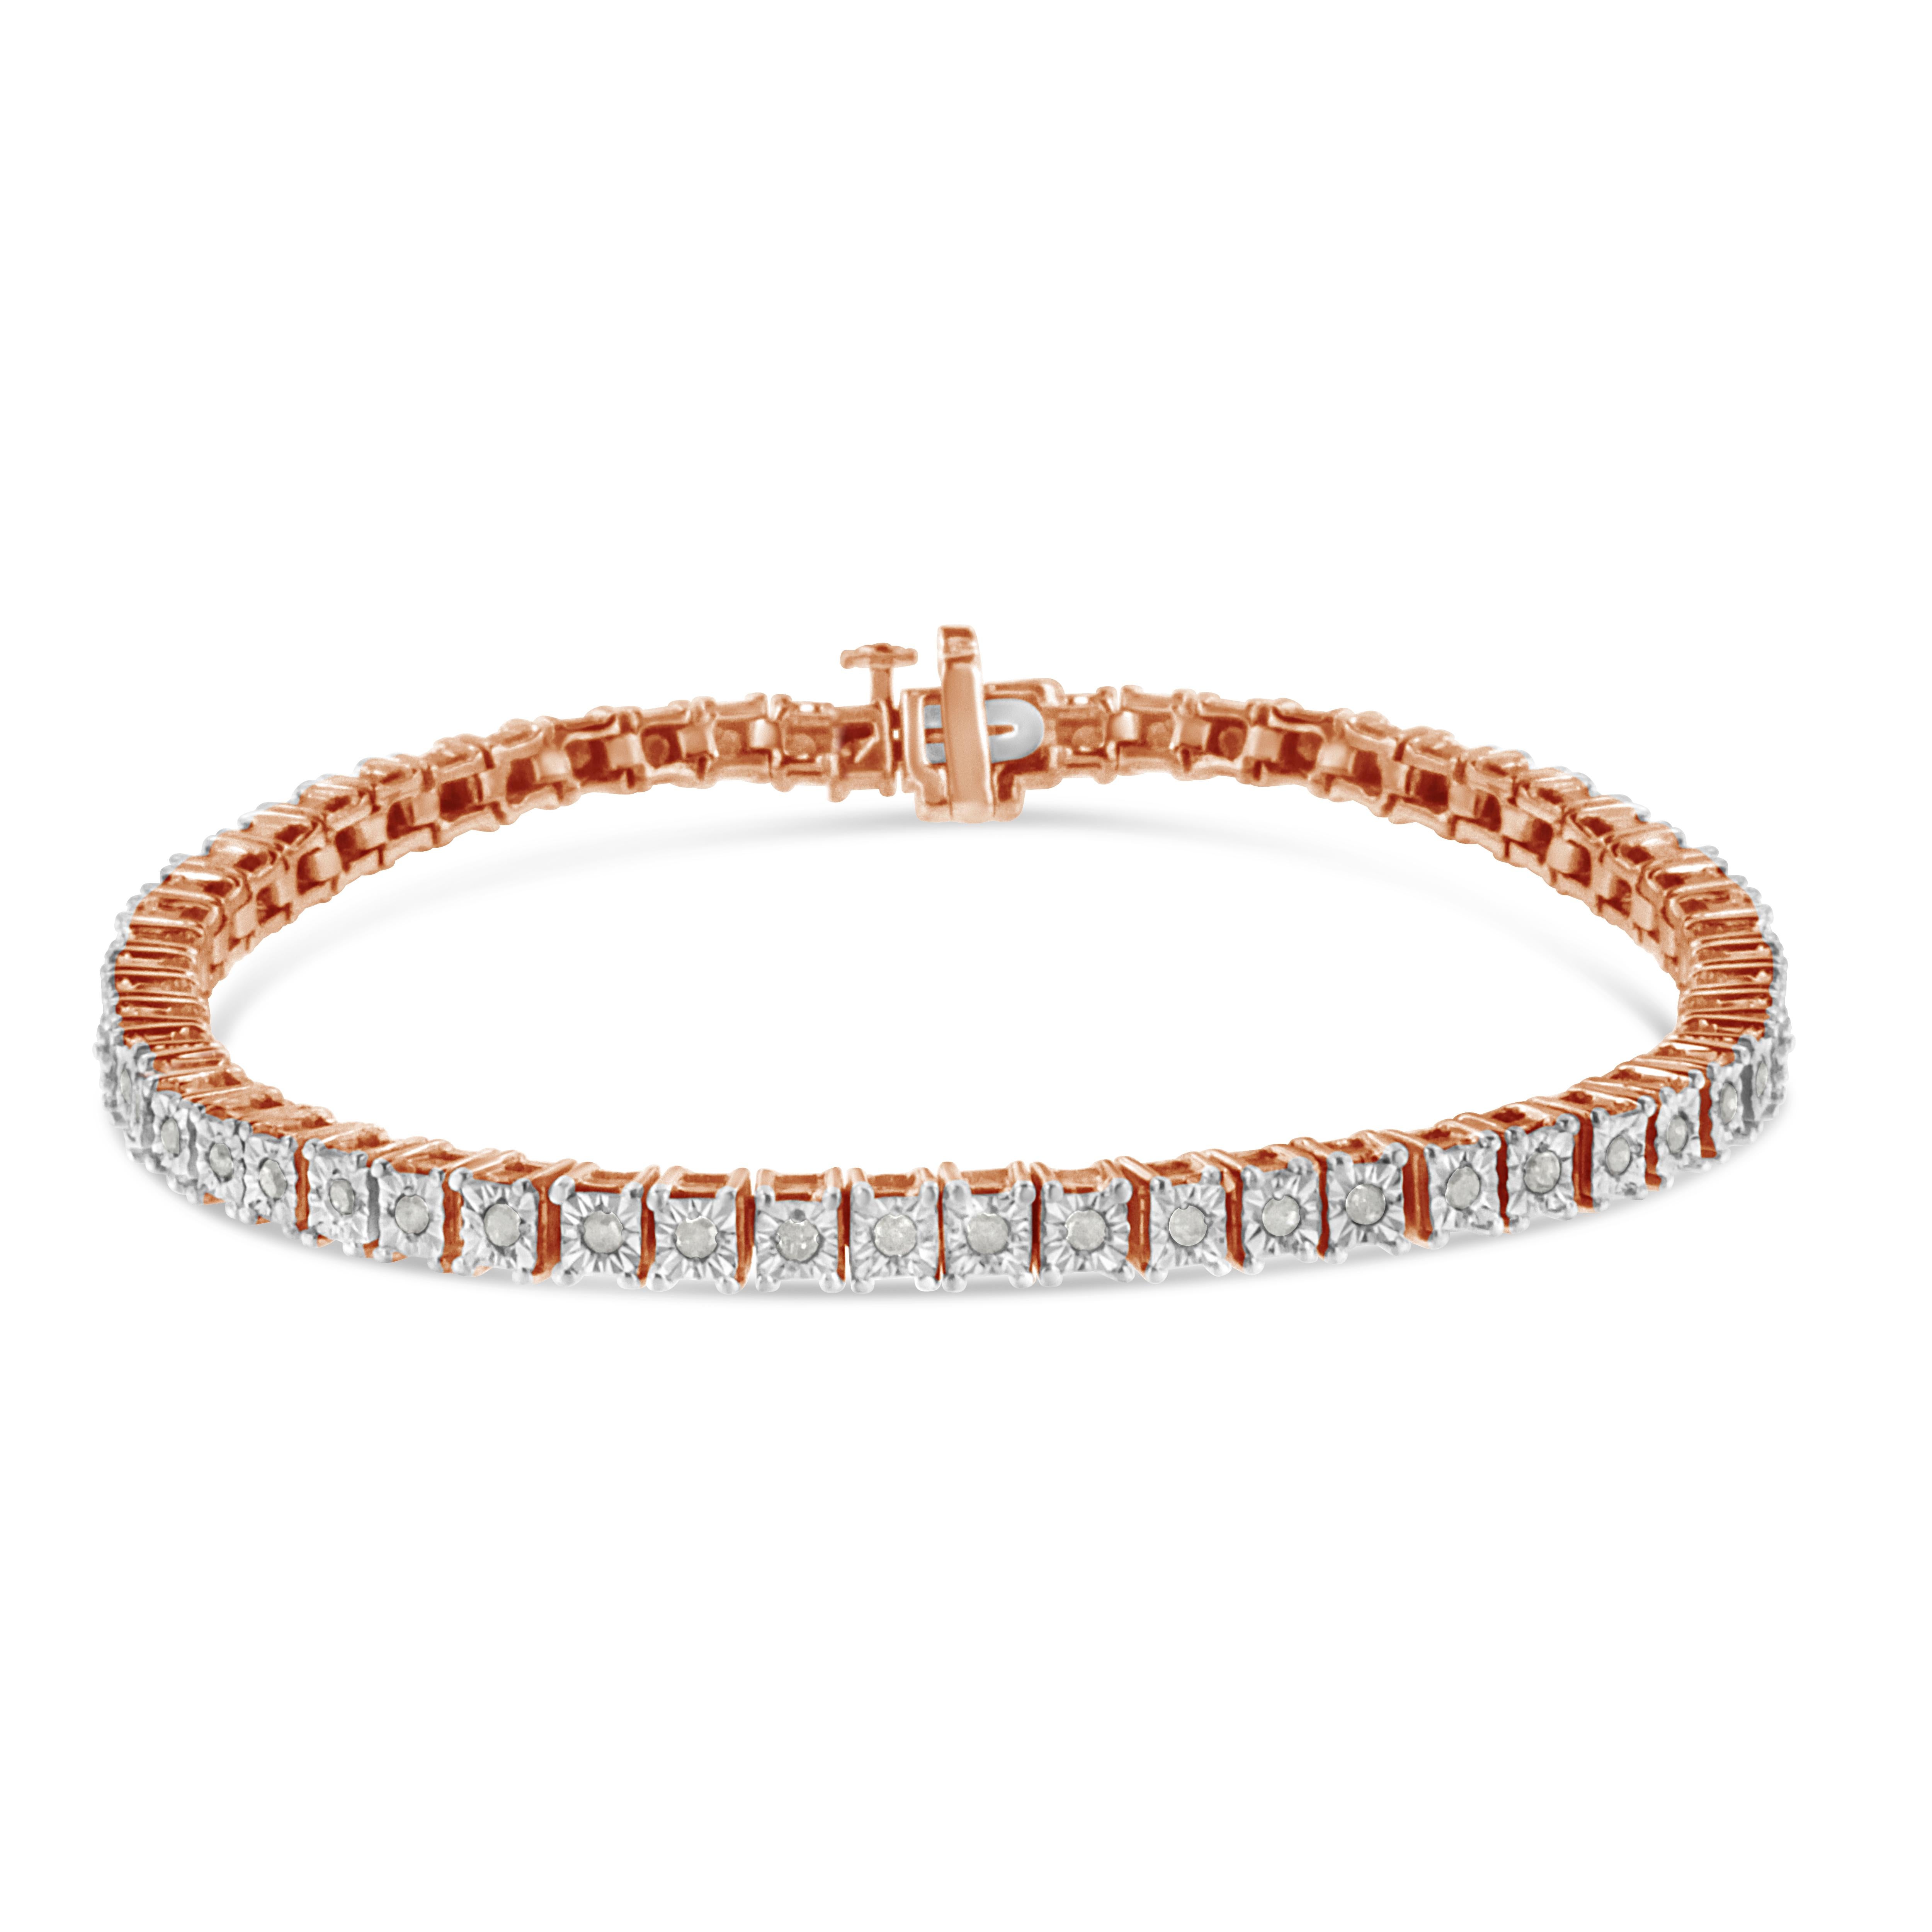 Ce bracelet de tennis féminin et glamour est composé des plus beaux diamants taillés en rose et aux multiples facettes, rappelant le style des bijoux Art Deco de l'époque. Les maillons carrés en argent sterling véritable et massif .925 ont un aspect